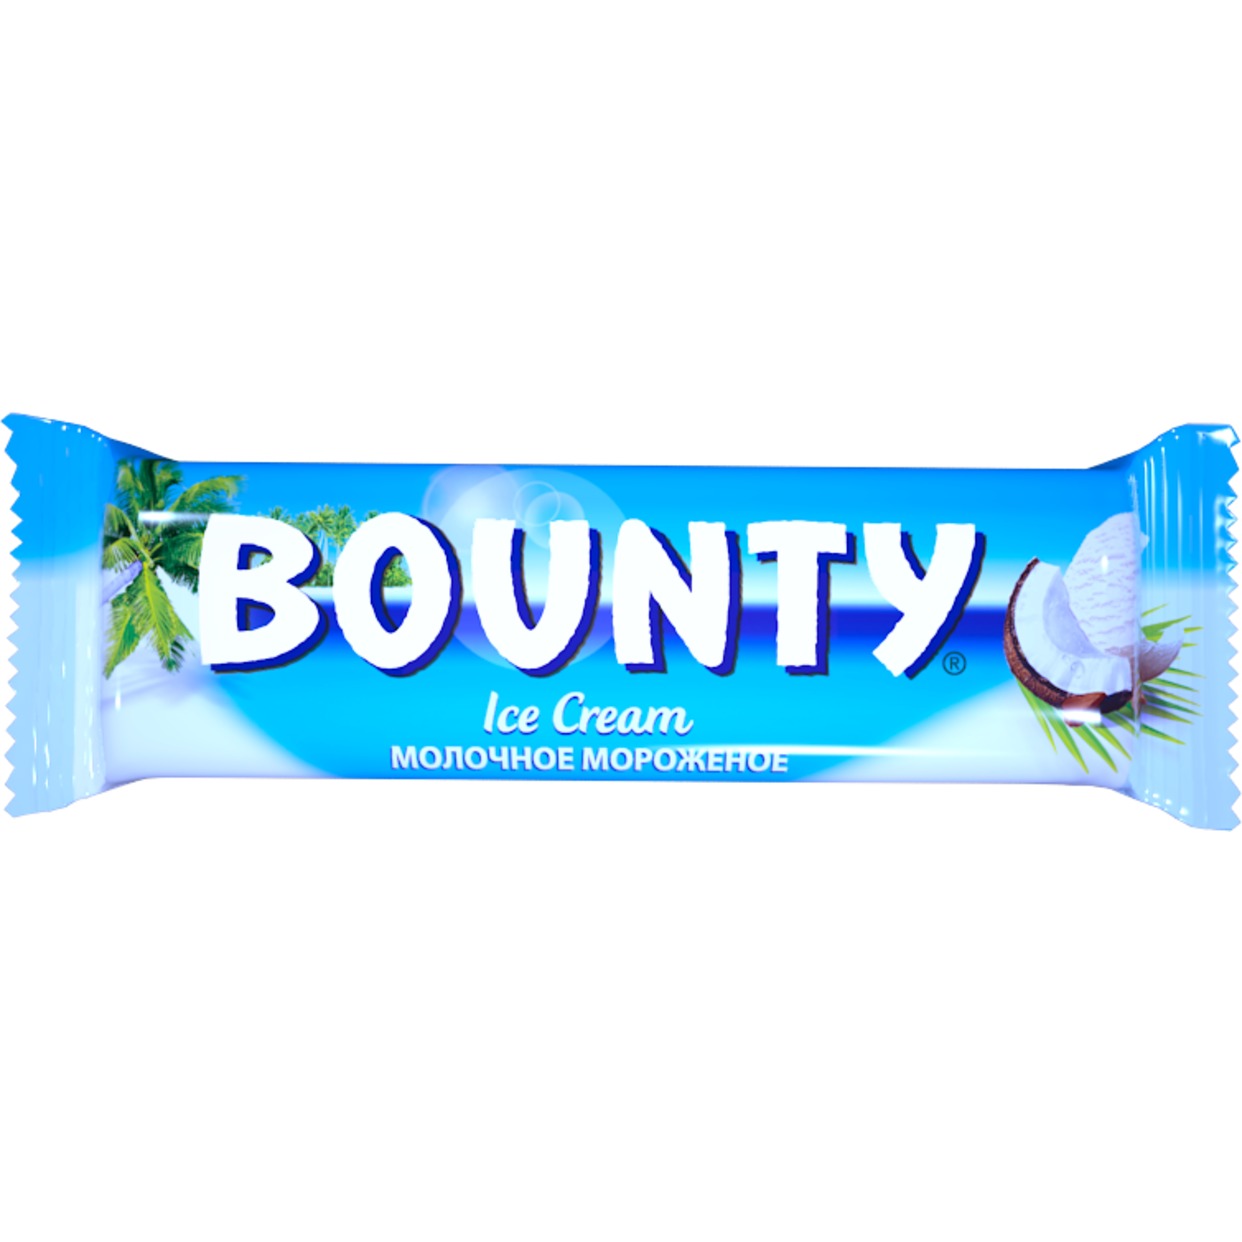 Мороженое Bounty, 39,1 г по акции в Пятерочке